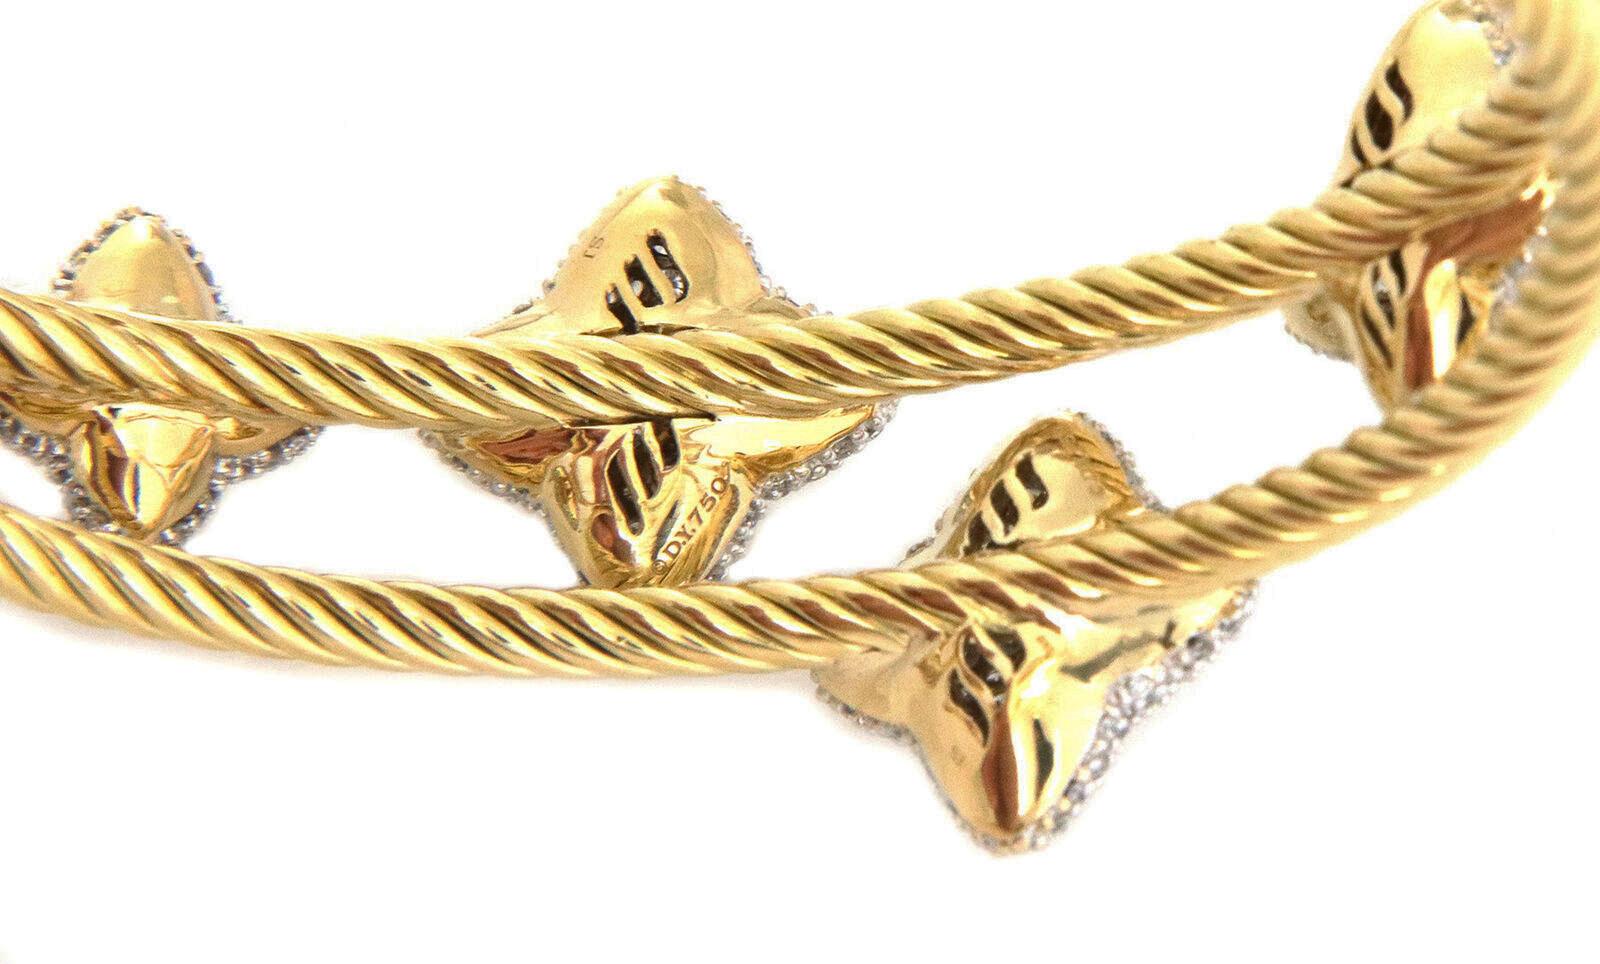 Brilliant Cut David Yurman Diamond 18k Gold Quatrefoil Motif Double Cable Band Cuff Bracelet For Sale